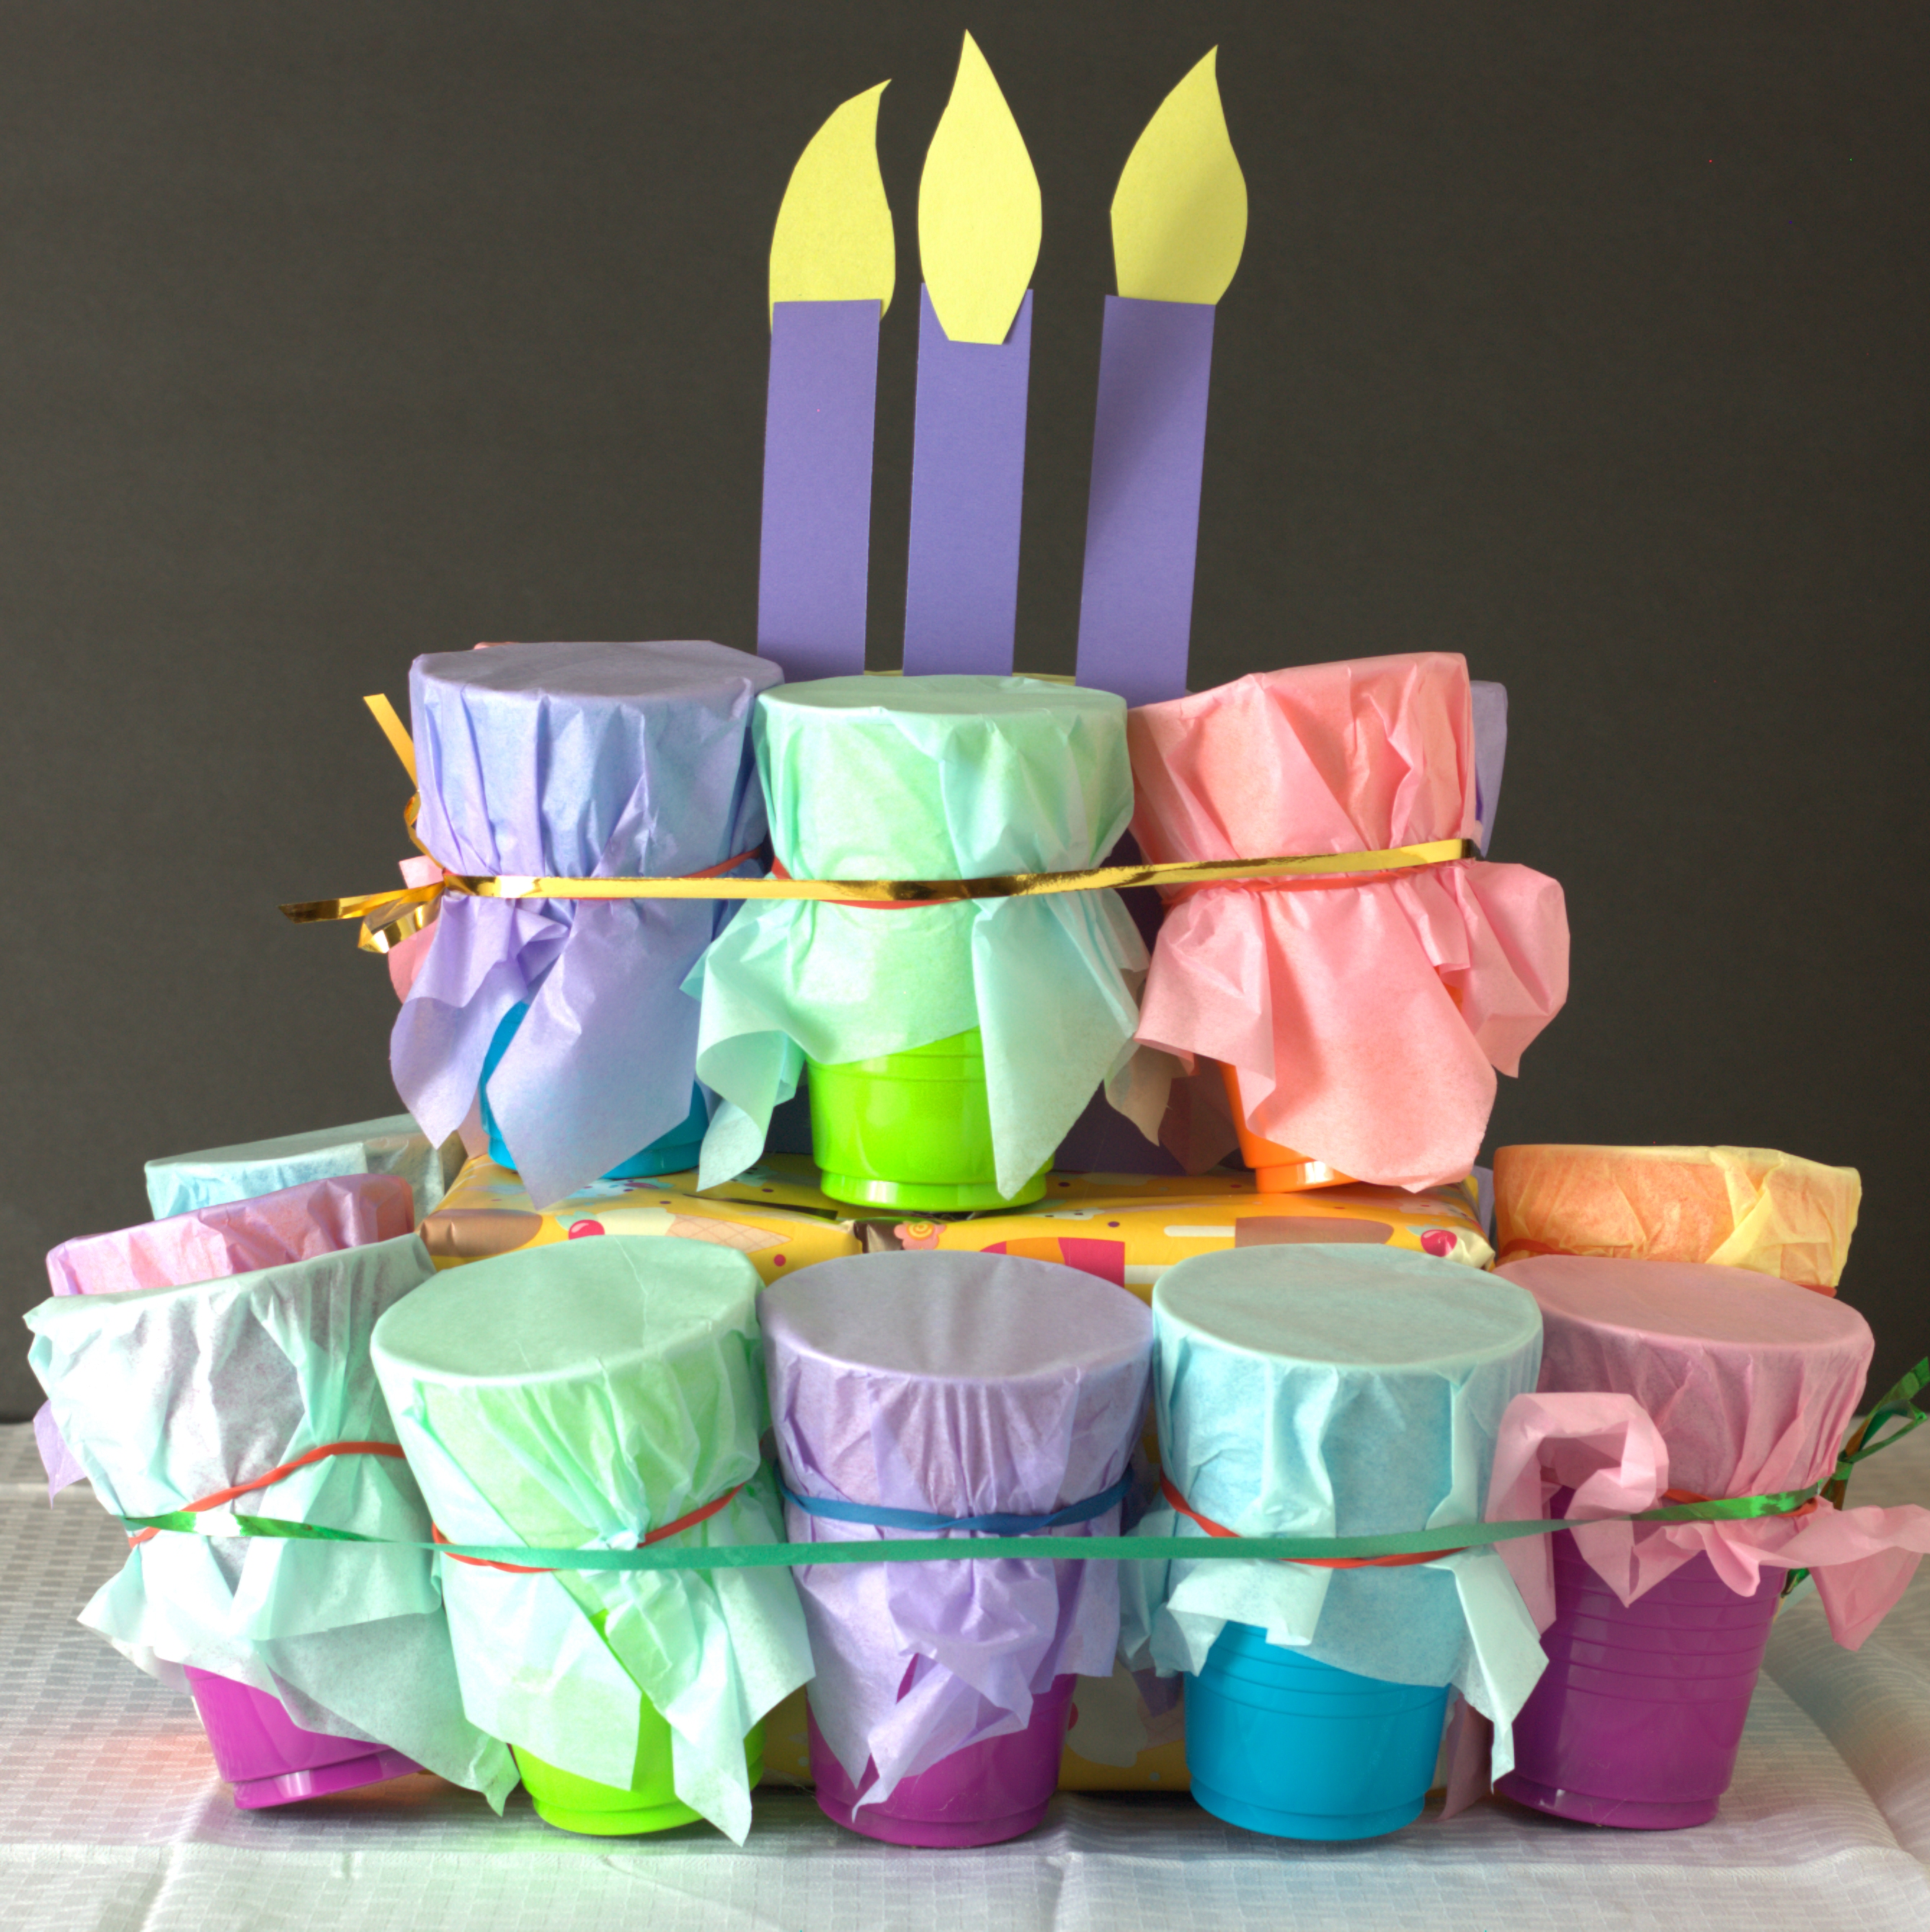 Punch Box "Birthday Cake"